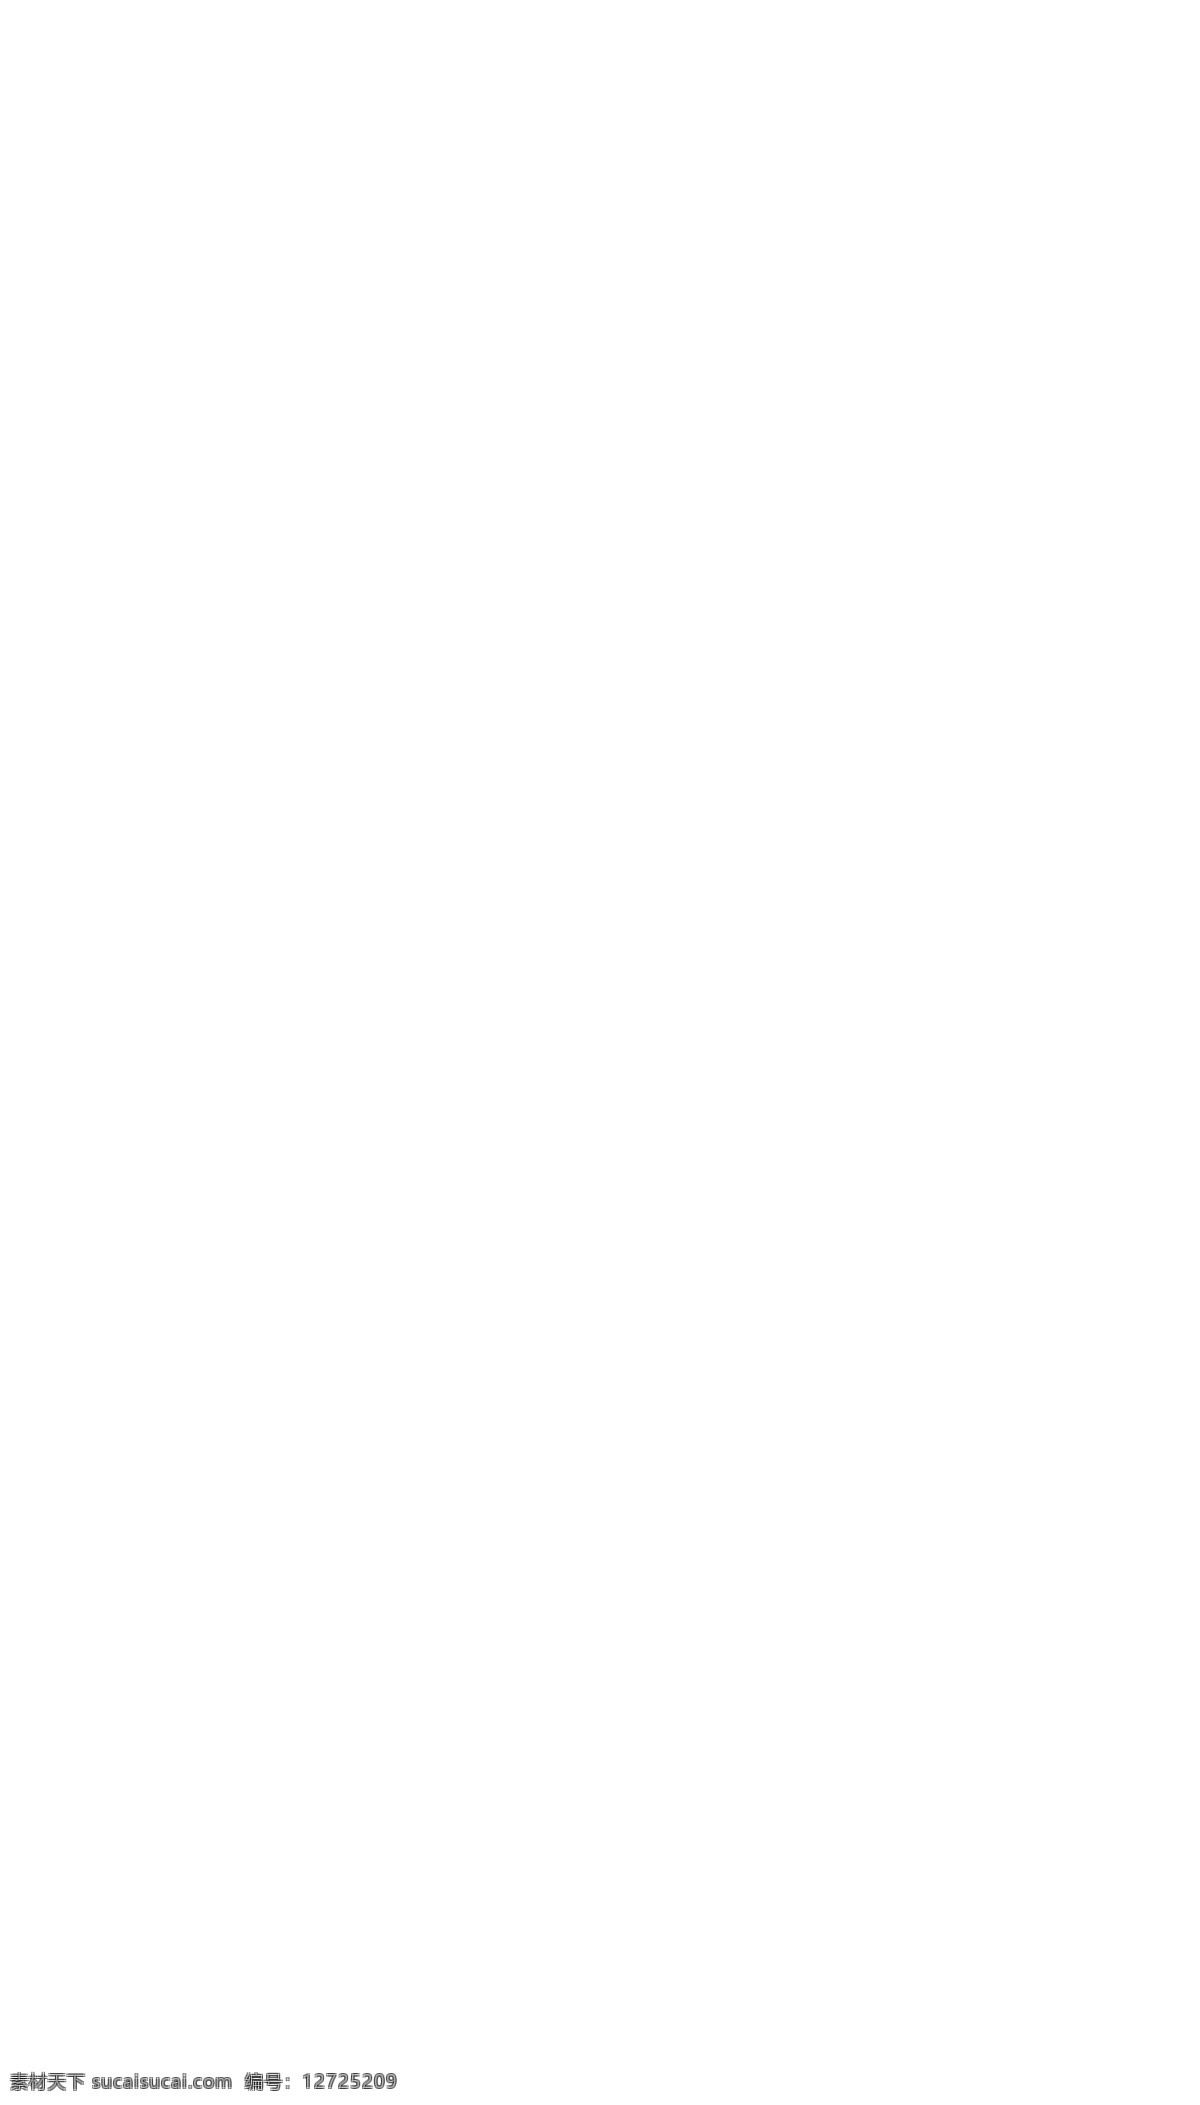 精美 淘宝 坚果 食品 店铺 首页 分层 天猫 坚果促销 坚果海报 坚果广告 香酥易剥 碧根果 巴旦木 夏威夷果 地图 新疆特产